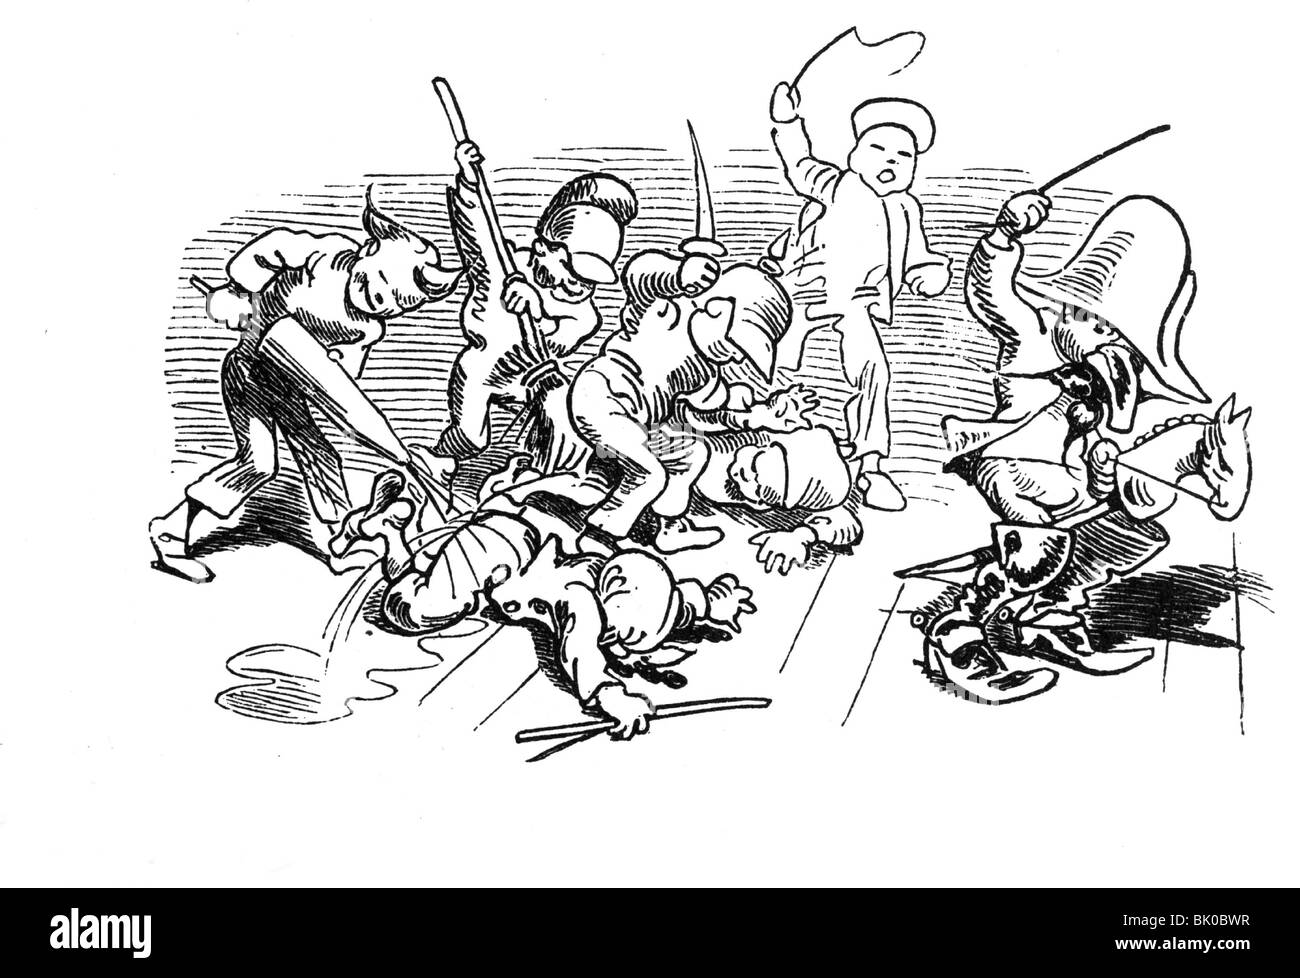 Literatur, Wilhelm Busch 1832 - 1908, "Der fliegende Frosch III", "Artist  Copyright wurde nicht gelöscht Stockfotografie - Alamy